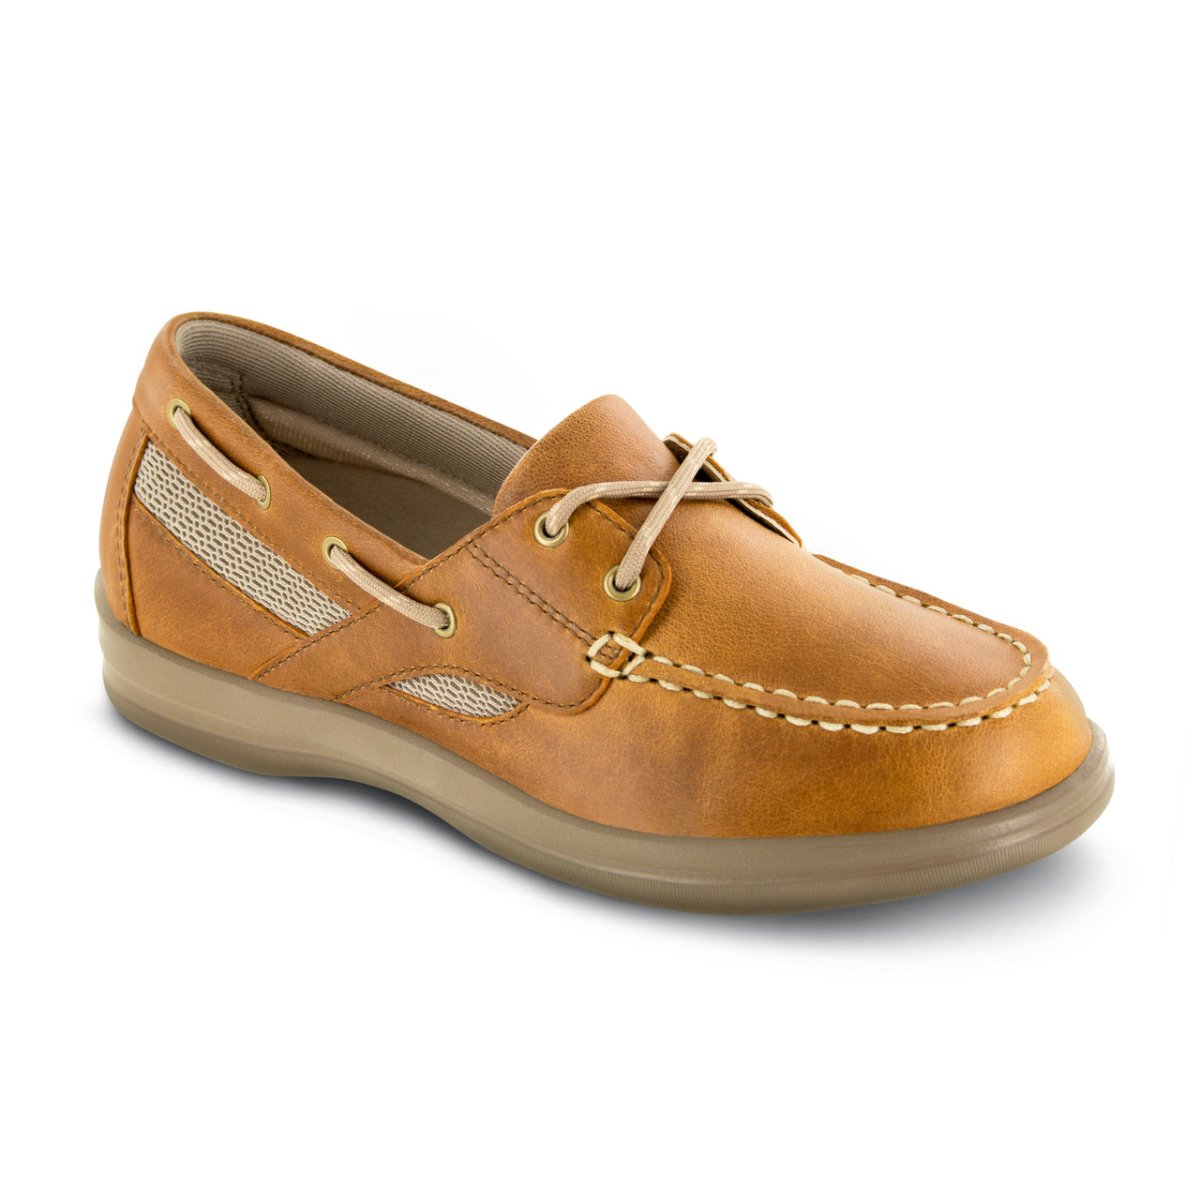 APEX SYDNEY BOAT SHOE WOMEN'S IN CAMEL - TLW Shoes